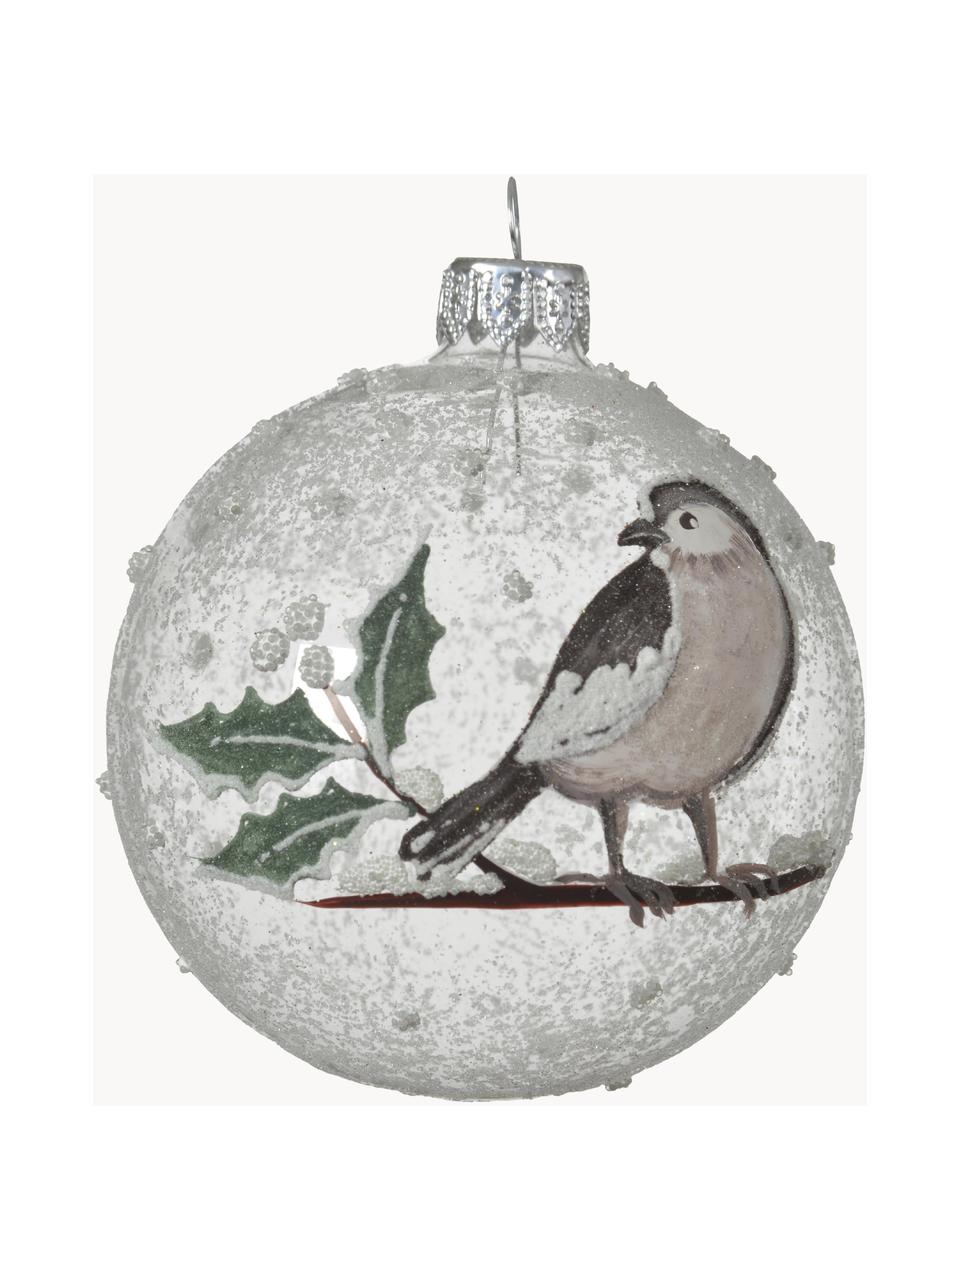 Ručně foukané vánoční ozdoby Birdy, 6 ks, Sklo, Transparentní, bílá, zelená, hnědá, Ø 8 cm